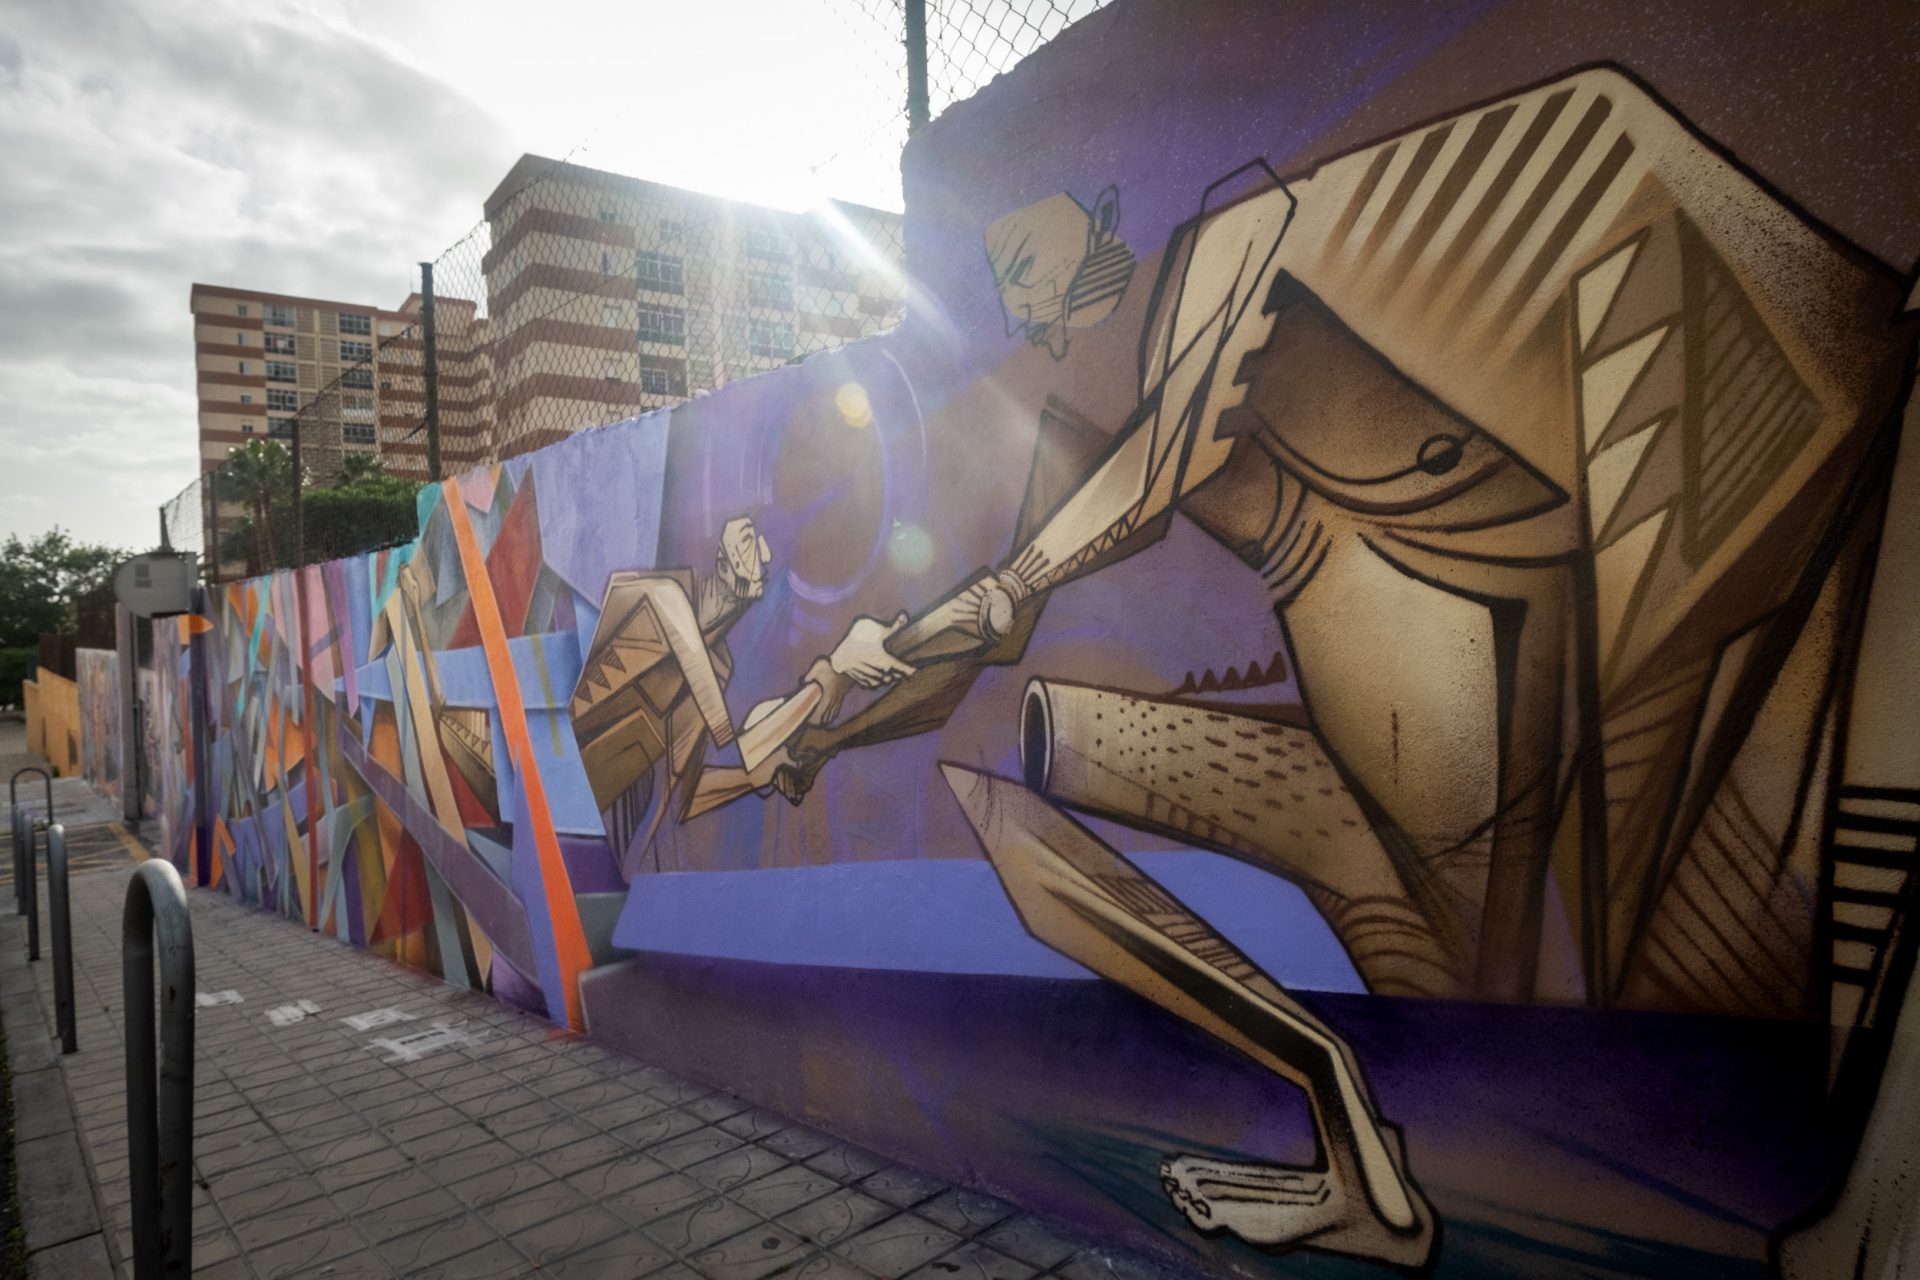 La ayuda al migrante que se juega la vida por llegar a las costas de Canarias está también representada en el mural. FRAN PALLERO